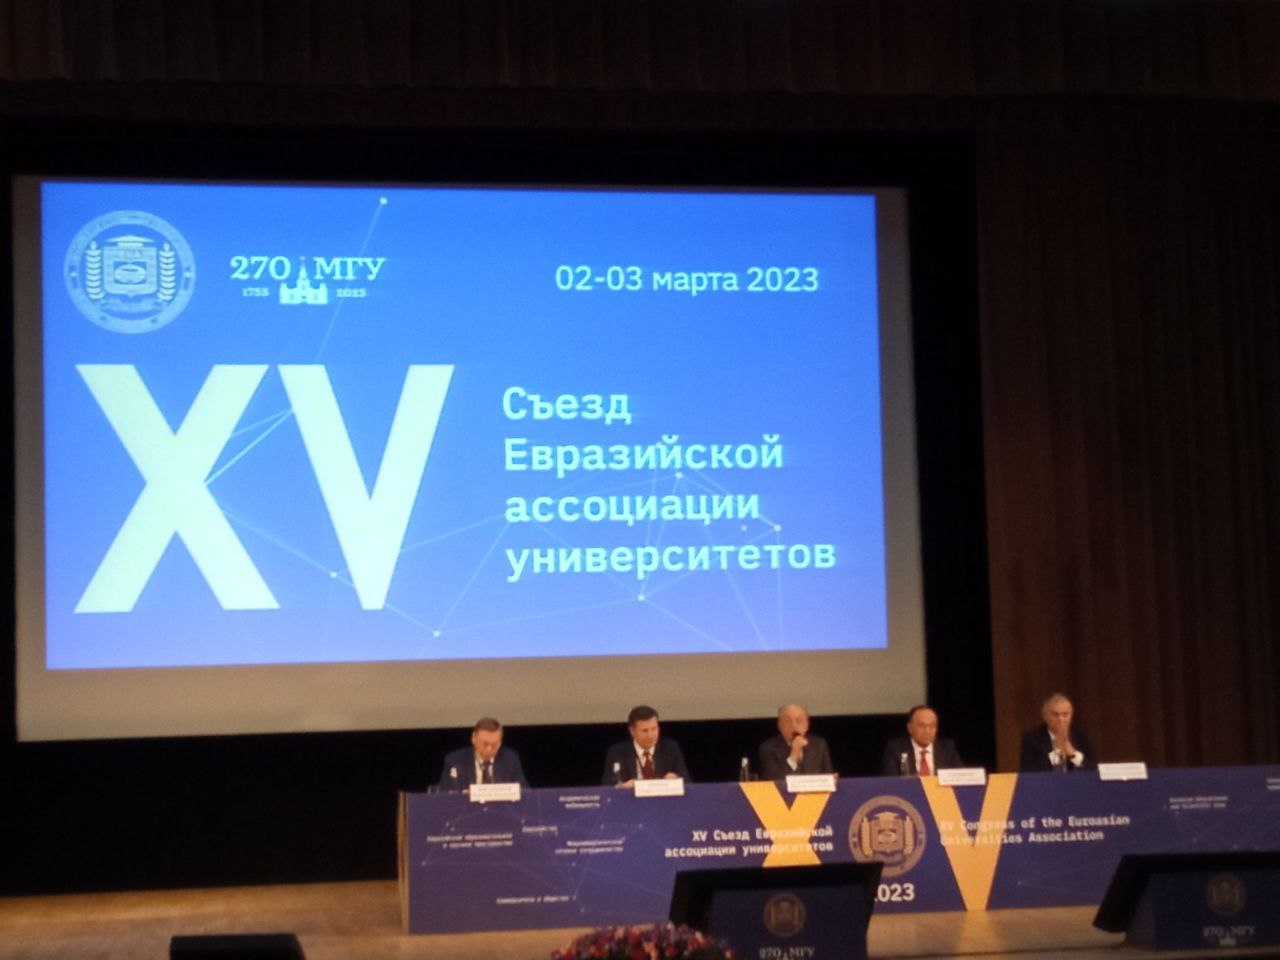 Делегация Купаловского университета принимает участие в XV Съезде Евразийской ассоциации университетов